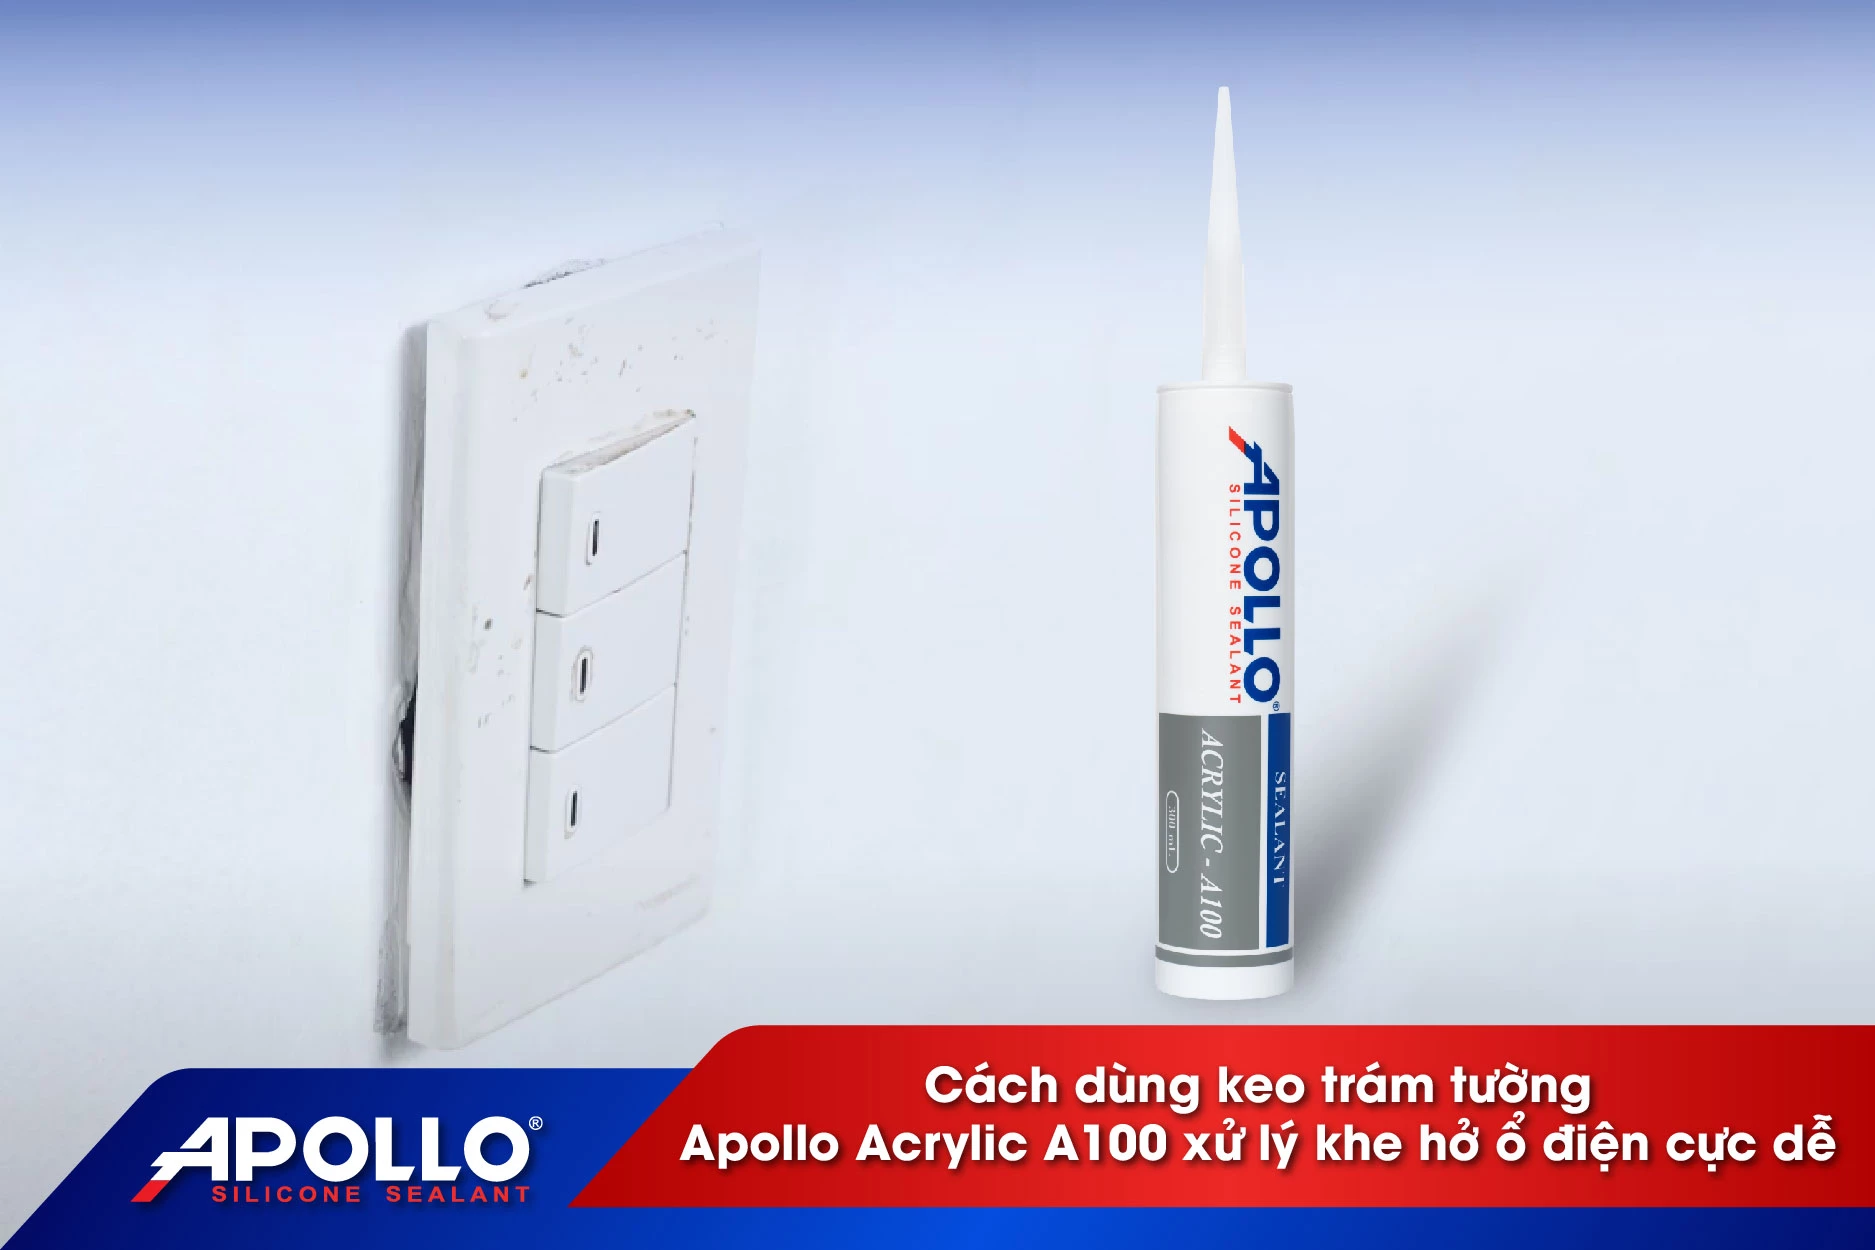 Cách dùng keo trám tường Apollo Acrylic A100 xử lý khe hở ổ điện cực dễ